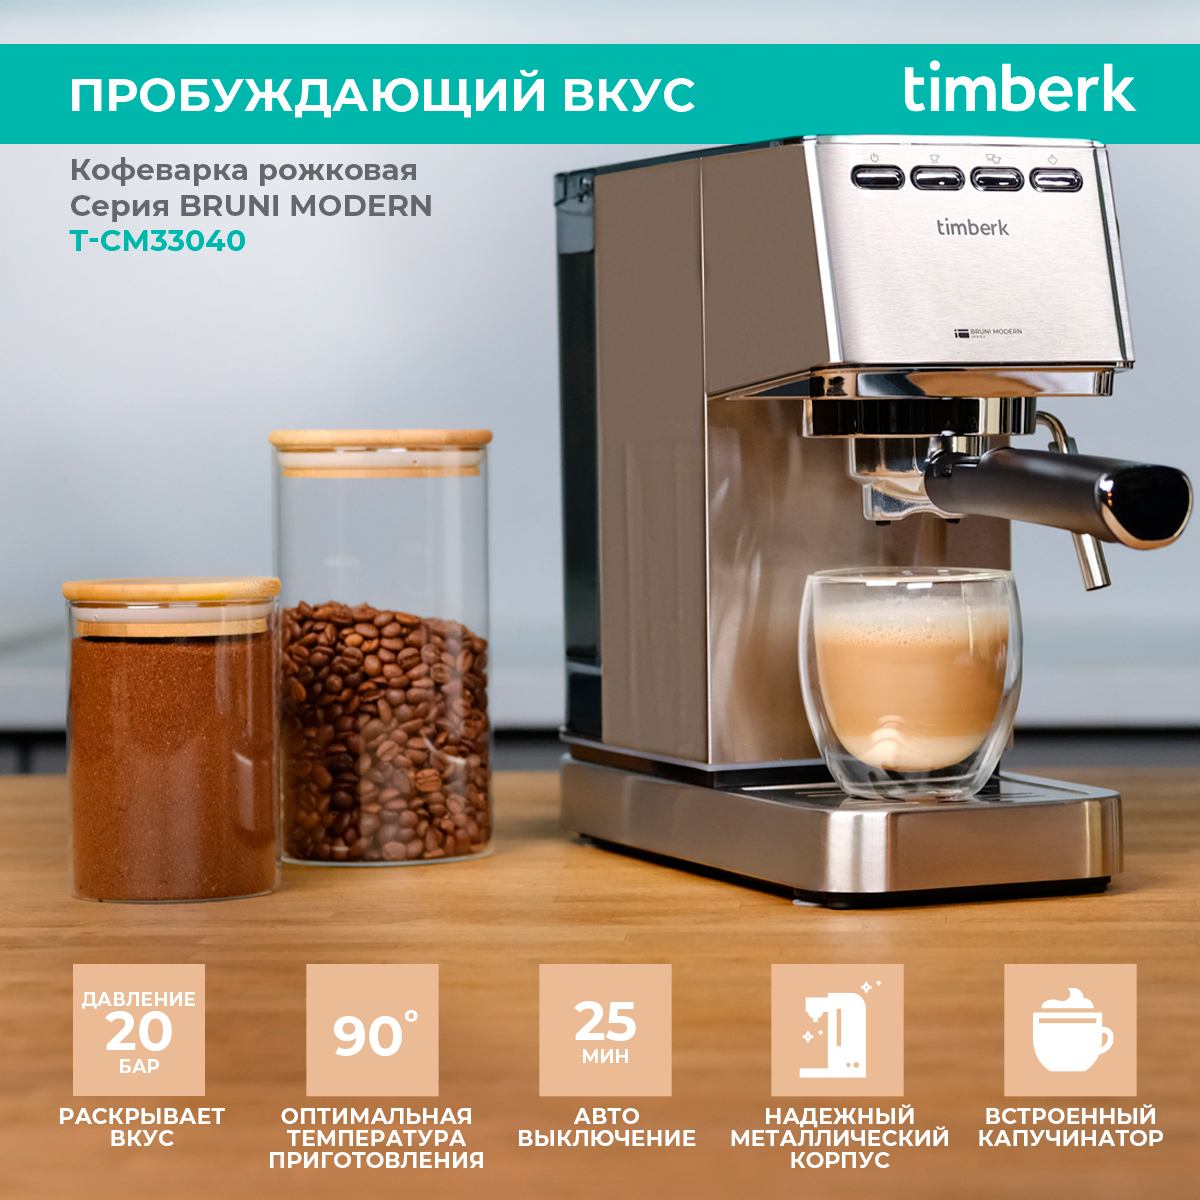 Рожковая кофеварка Timberk T-CM33040 серебристый рожковая кофеварка timberk t cm33038 серебристый